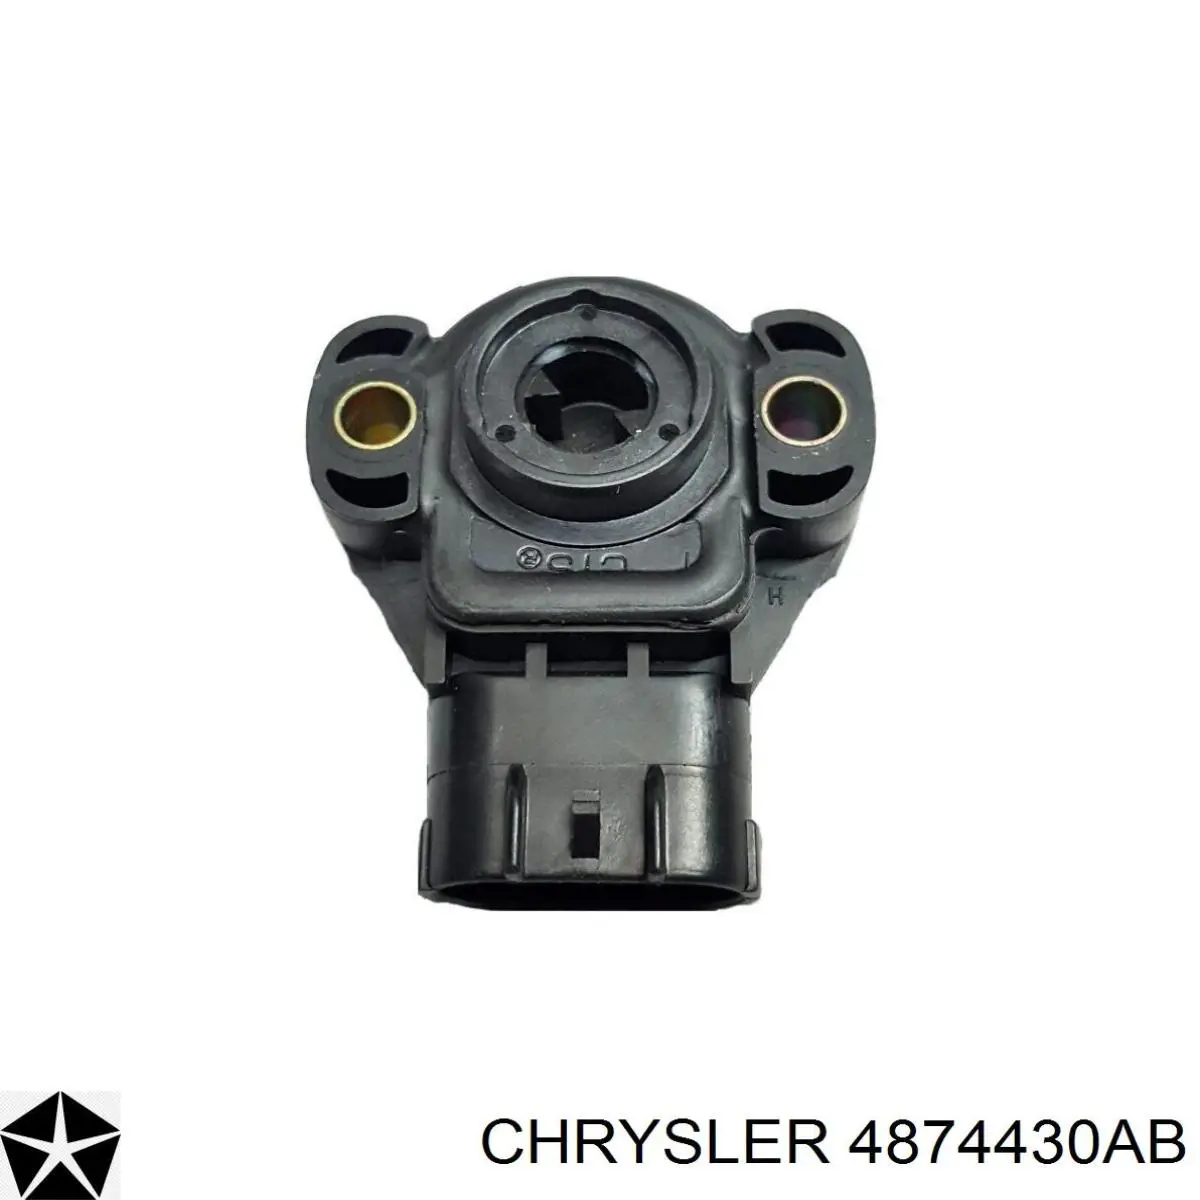 4874430AB Chrysler датчик положения дроссельной заслонки (потенциометр)